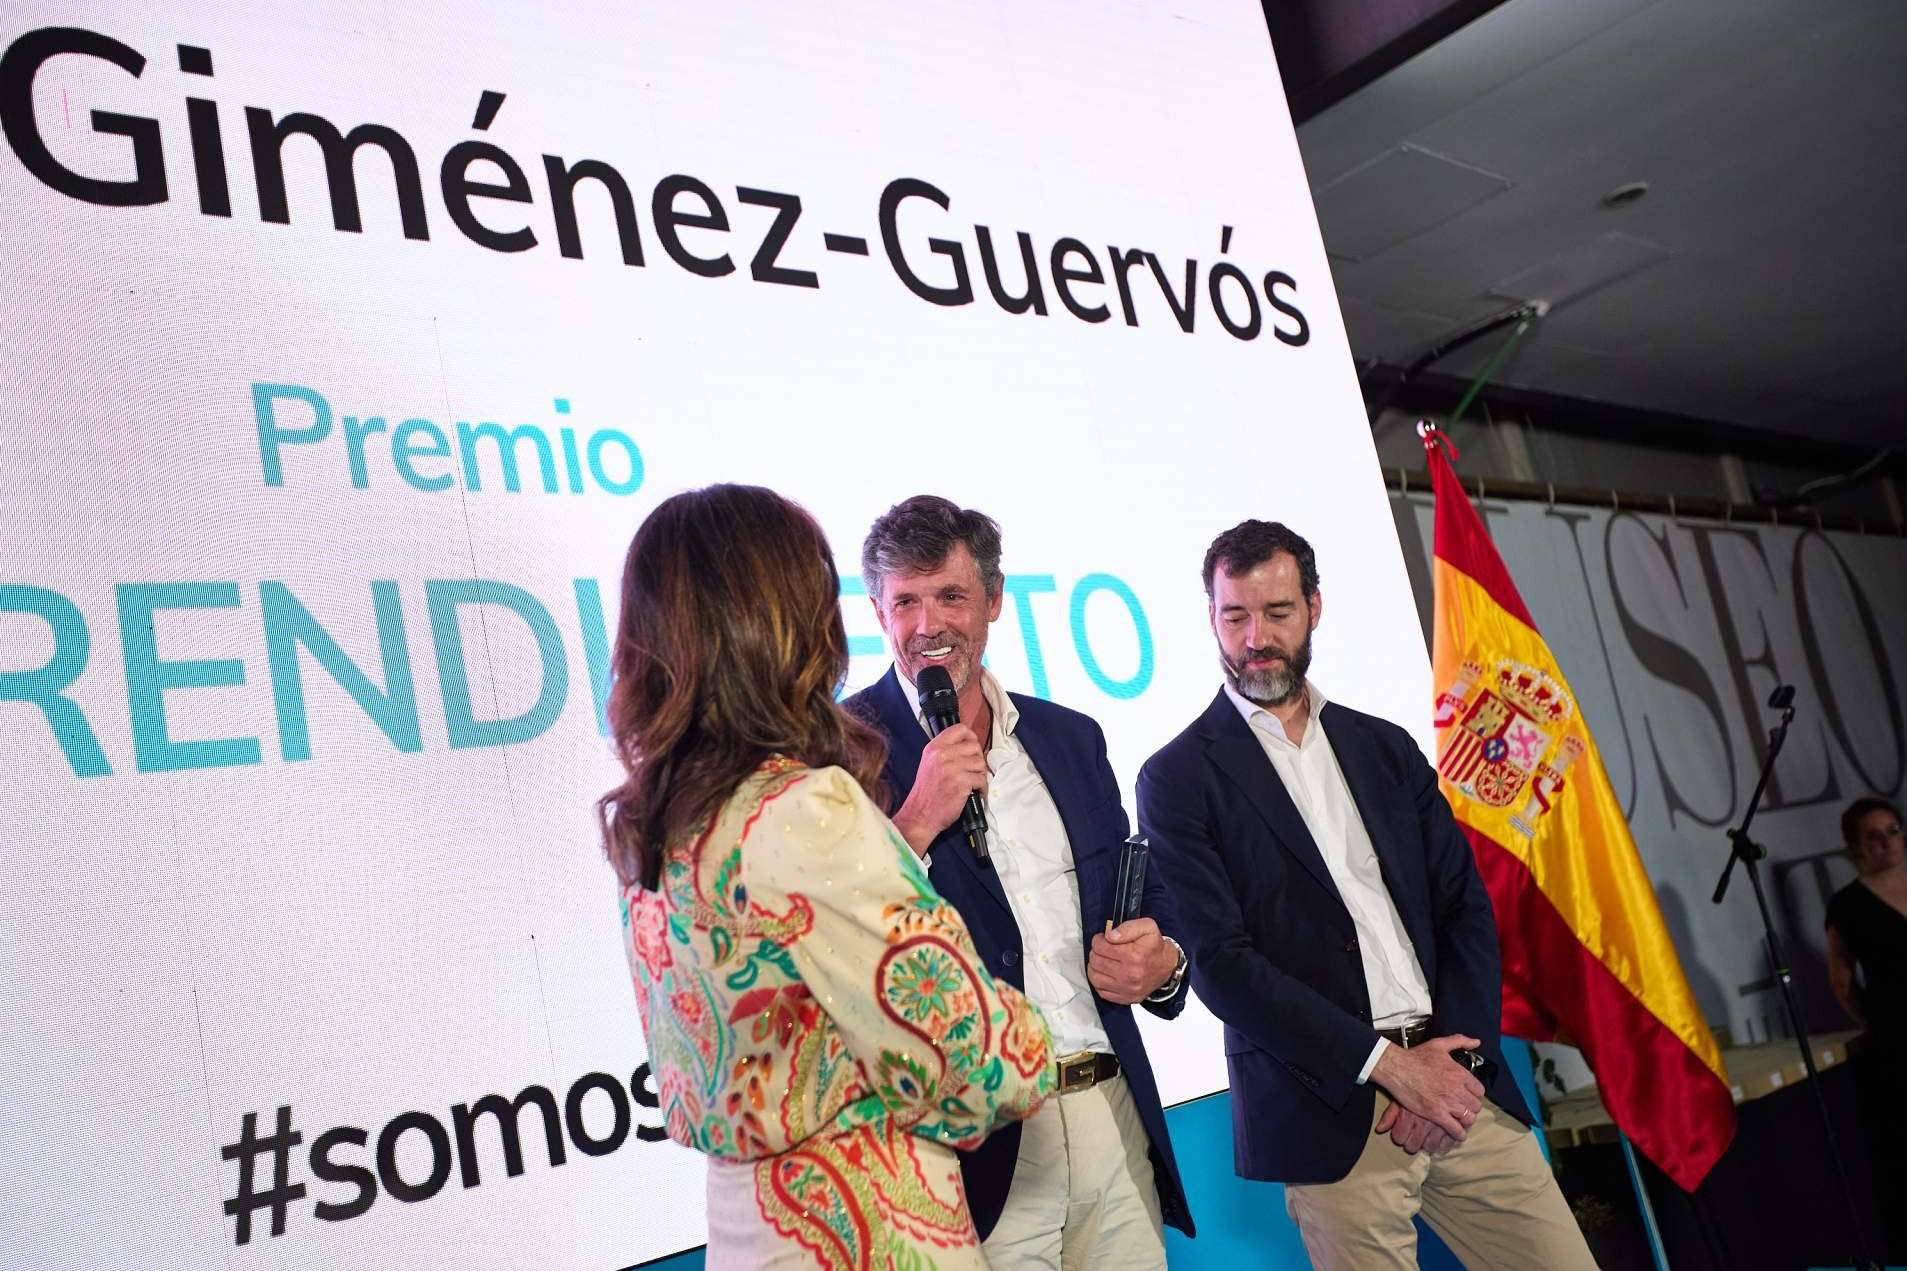  Fernando Giménez-Guervós, CEO de EccoFreight, galardonado con el Premio al Emprendimiento del IME 